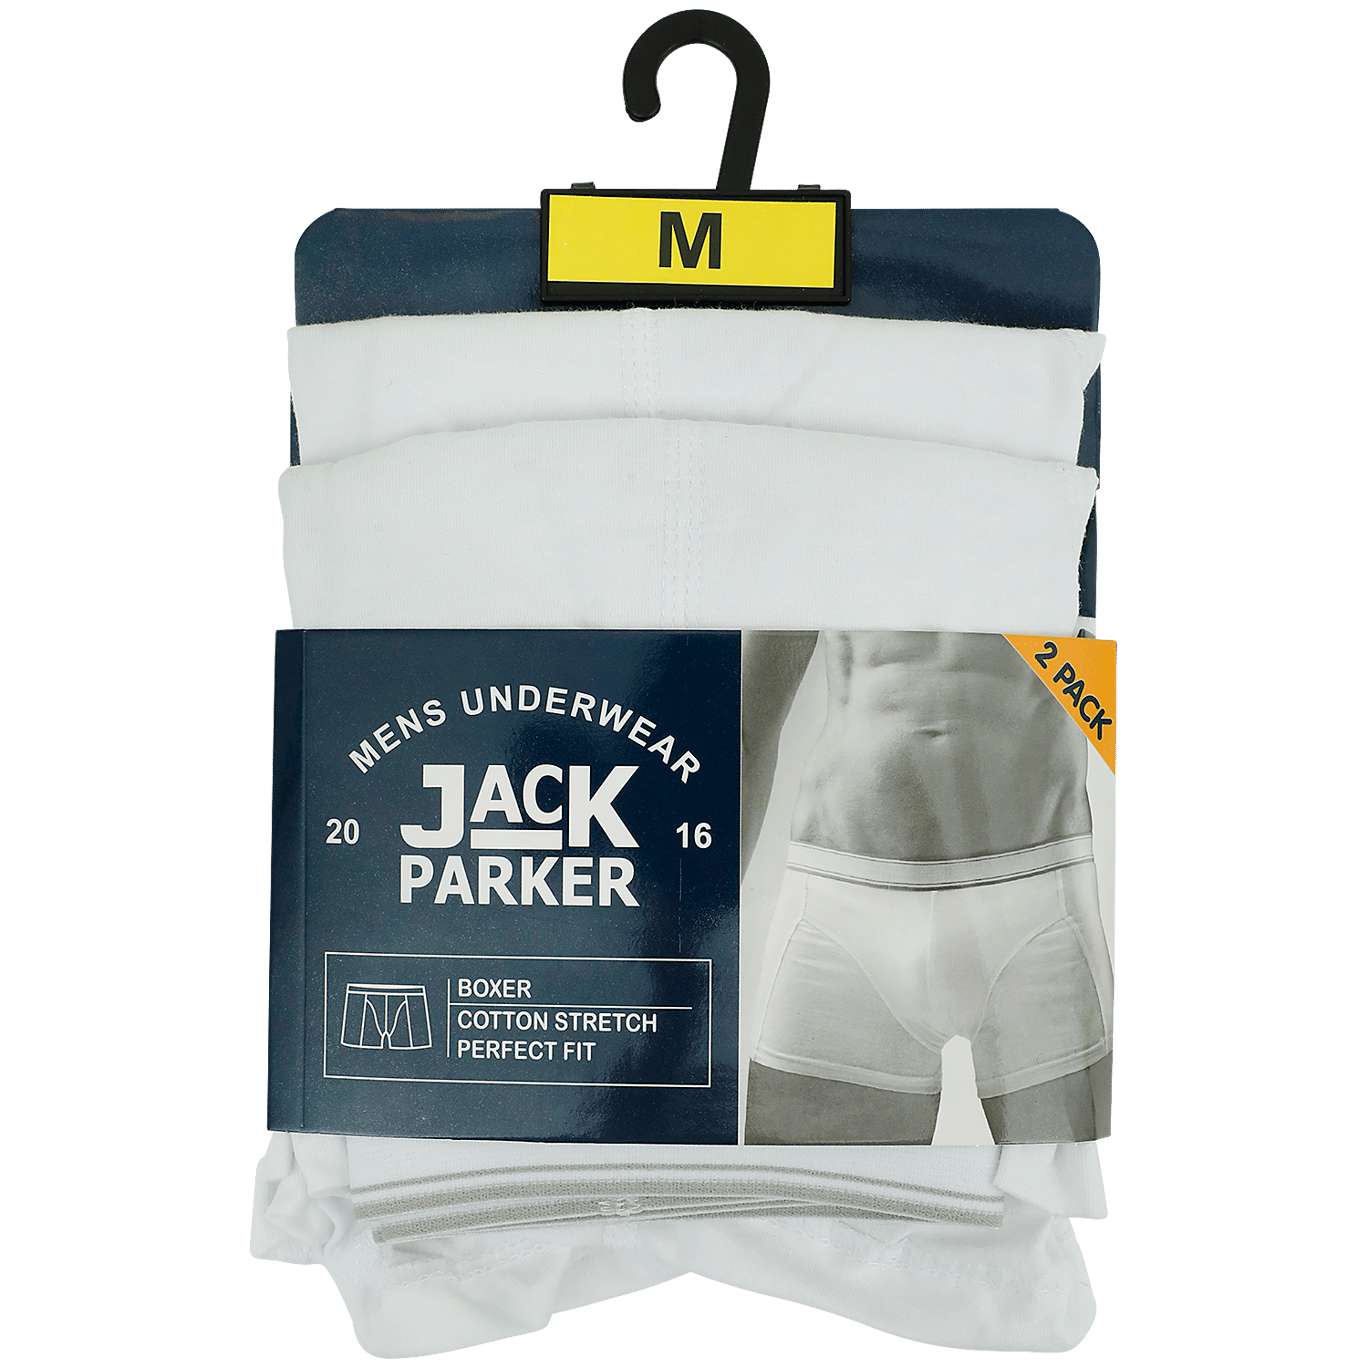 omringen Yoghurt staart Jack Parker boxershorts | Action.com